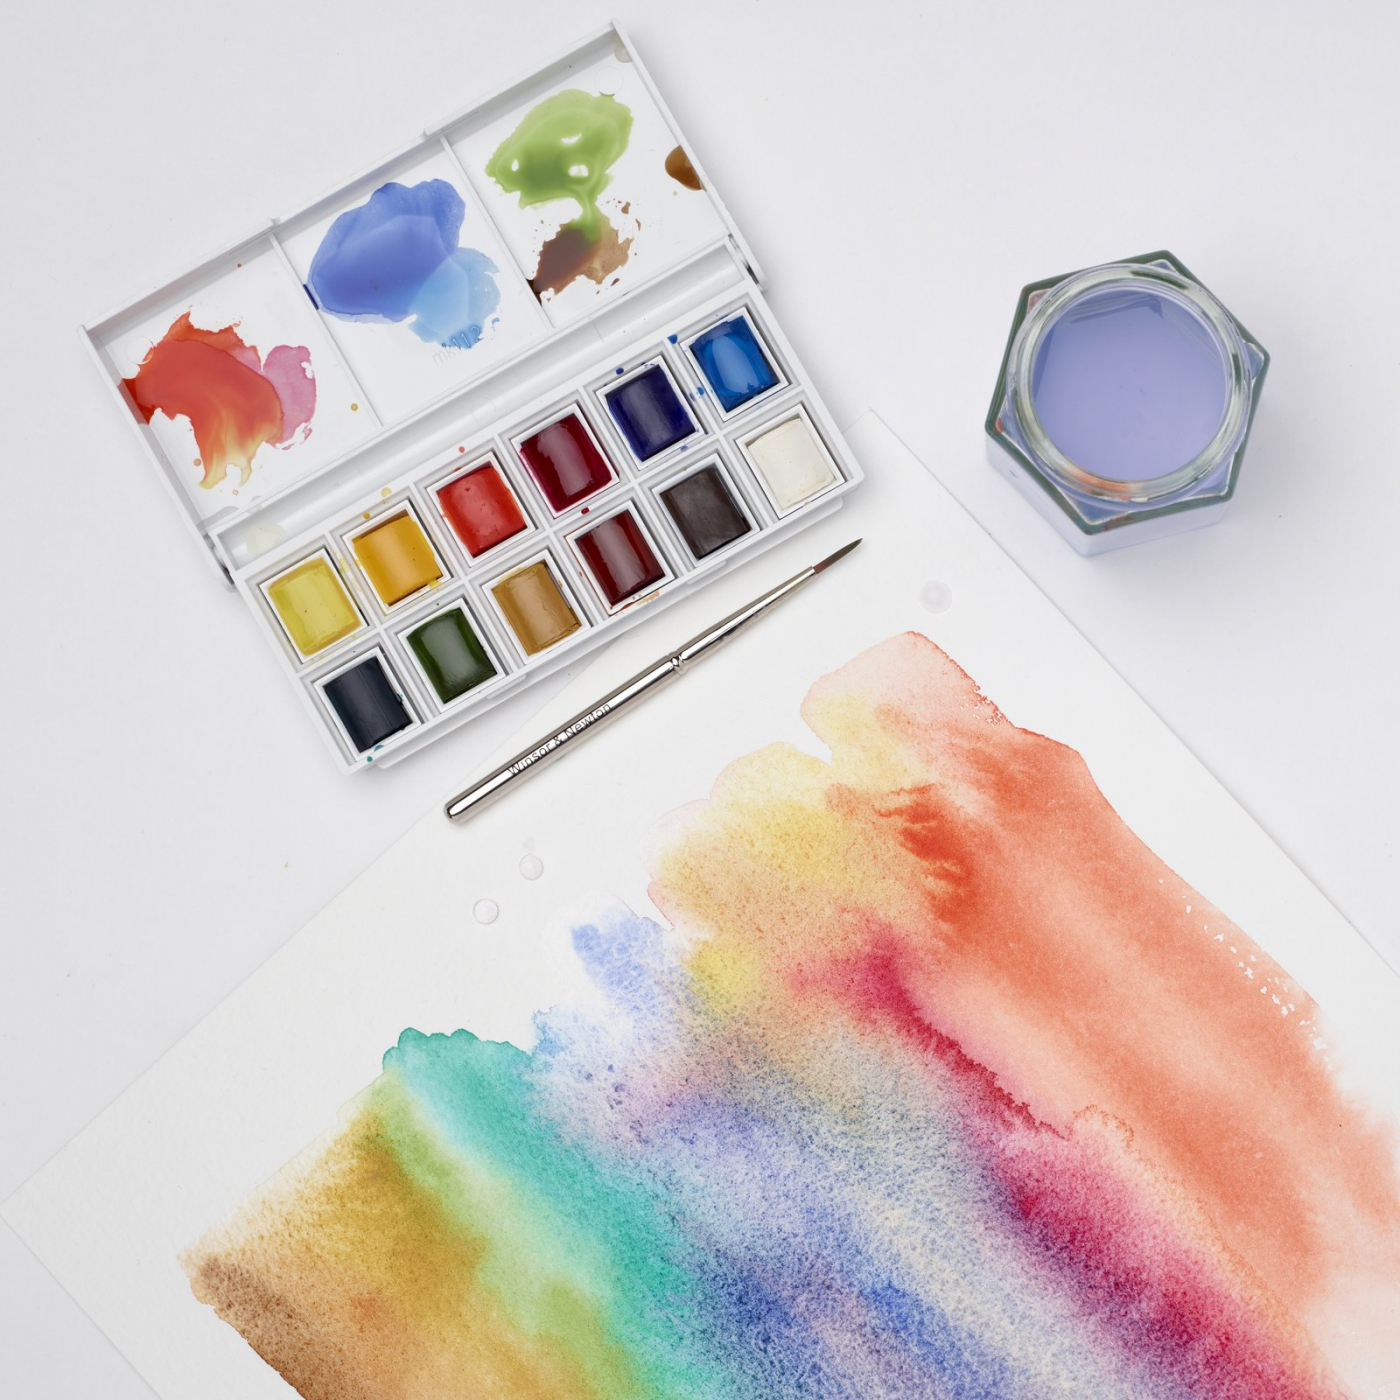 Cotman Akarellfarve Sketchers Pocket Box 12 ½ - koppar i gruppen Kunstnerartikler / Farver / Akvarelfarver hos Pen Store (107243)